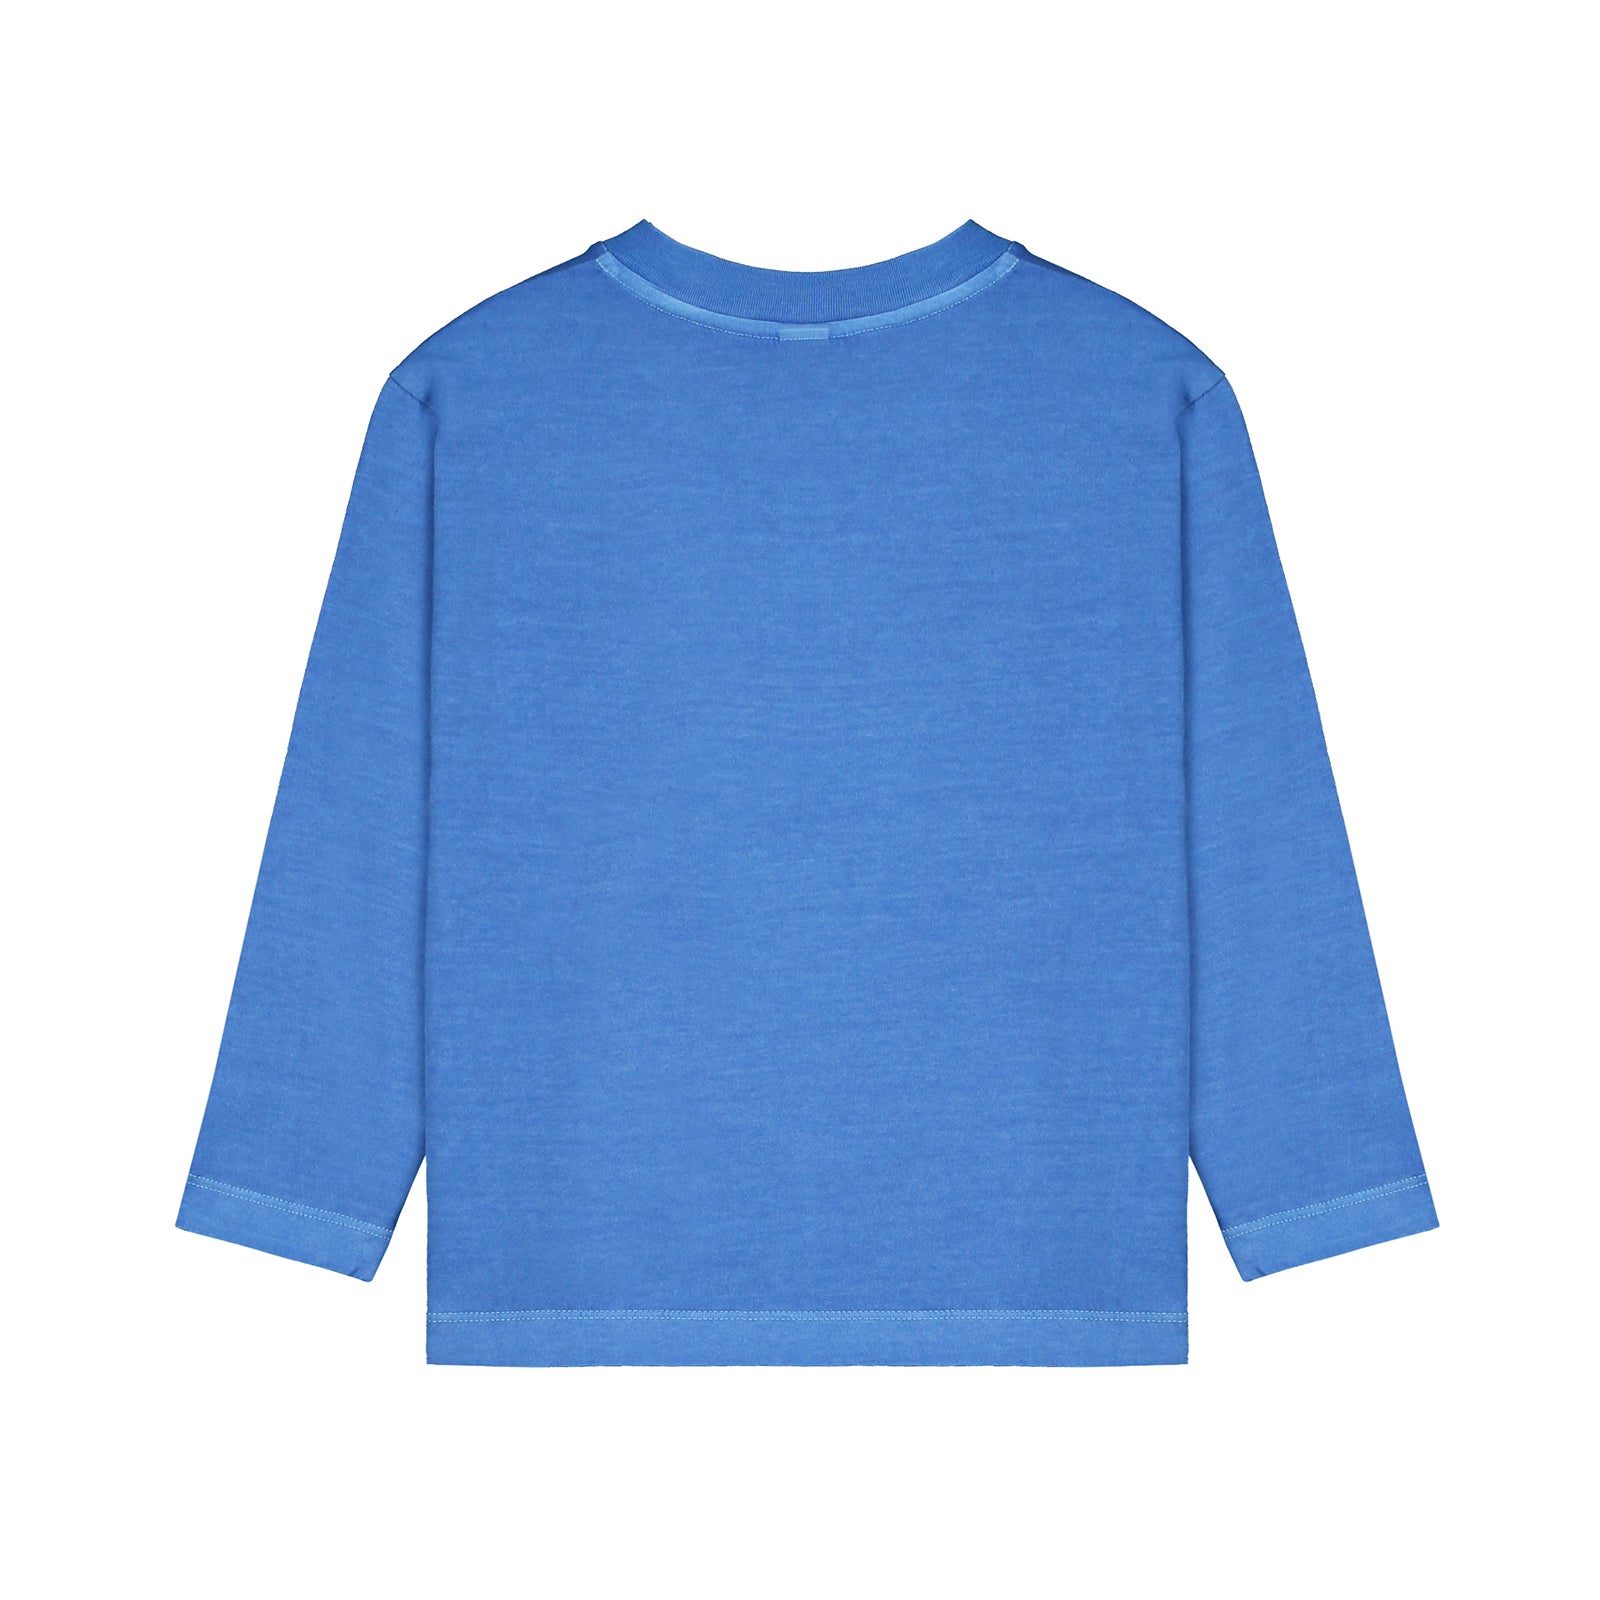 Boys & Girls Blue Printed Cotton T-Shirt